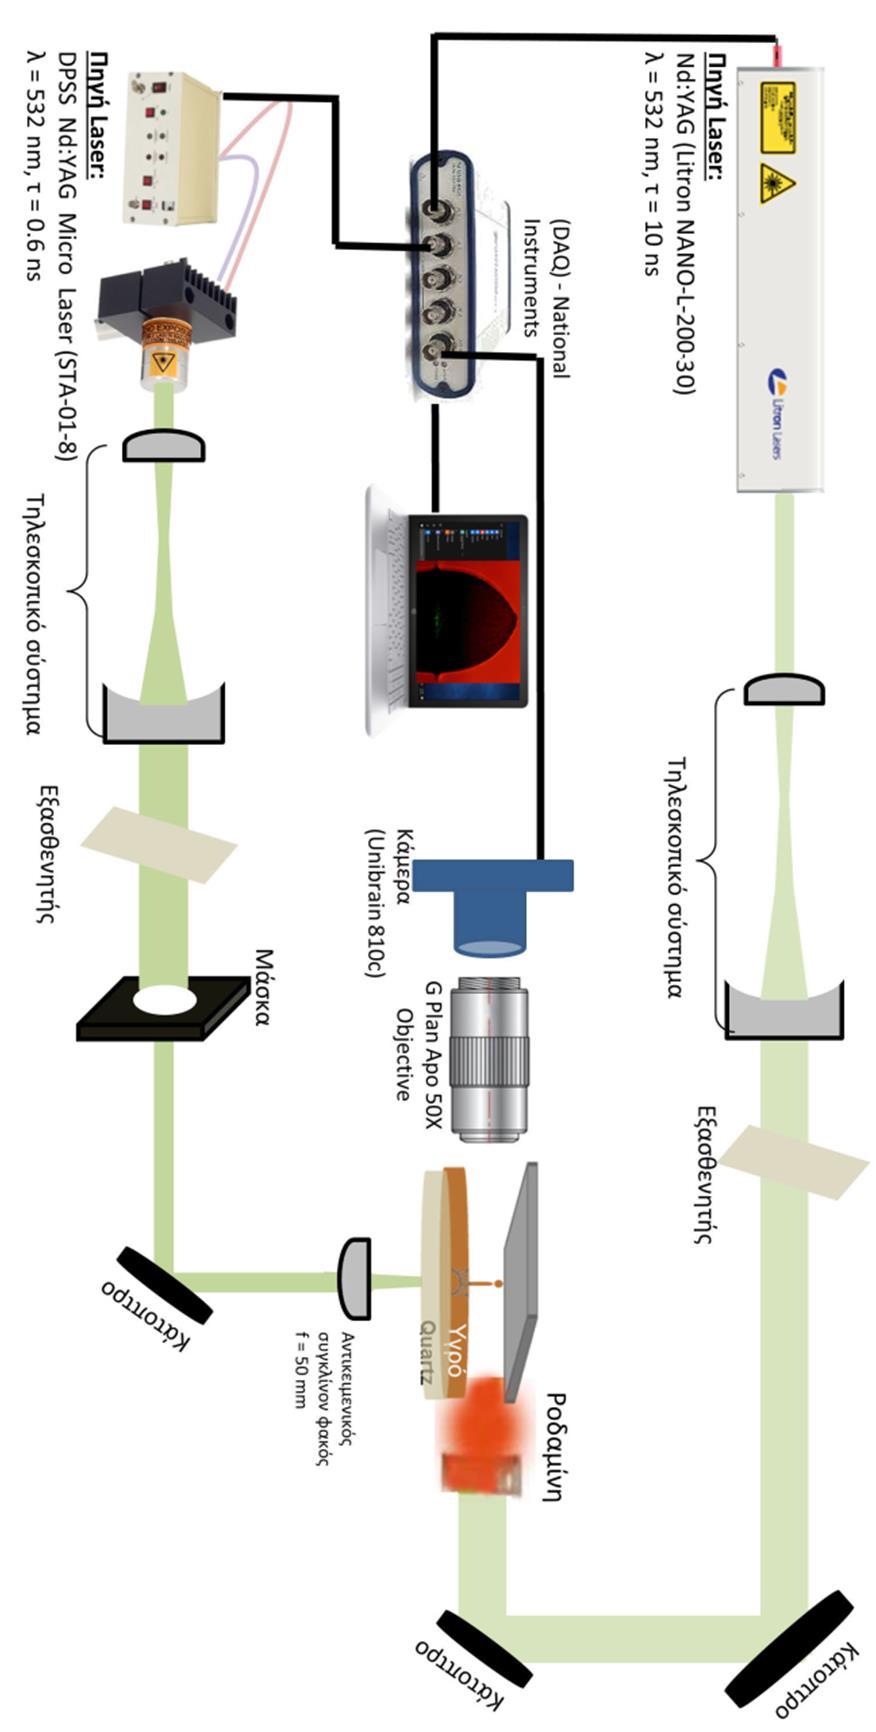 Διάγραμμα 4.5: Δεύτερη διάταξη στο εργαστήριο Laser του τομέα φυσικής ΕΜΠ χρονοεξαρτώμενης πλάγιας απεικόνισης για την καταγραφή του μηχανισμού εκτύπωσης με laser υλικών σε υγρή φάση.